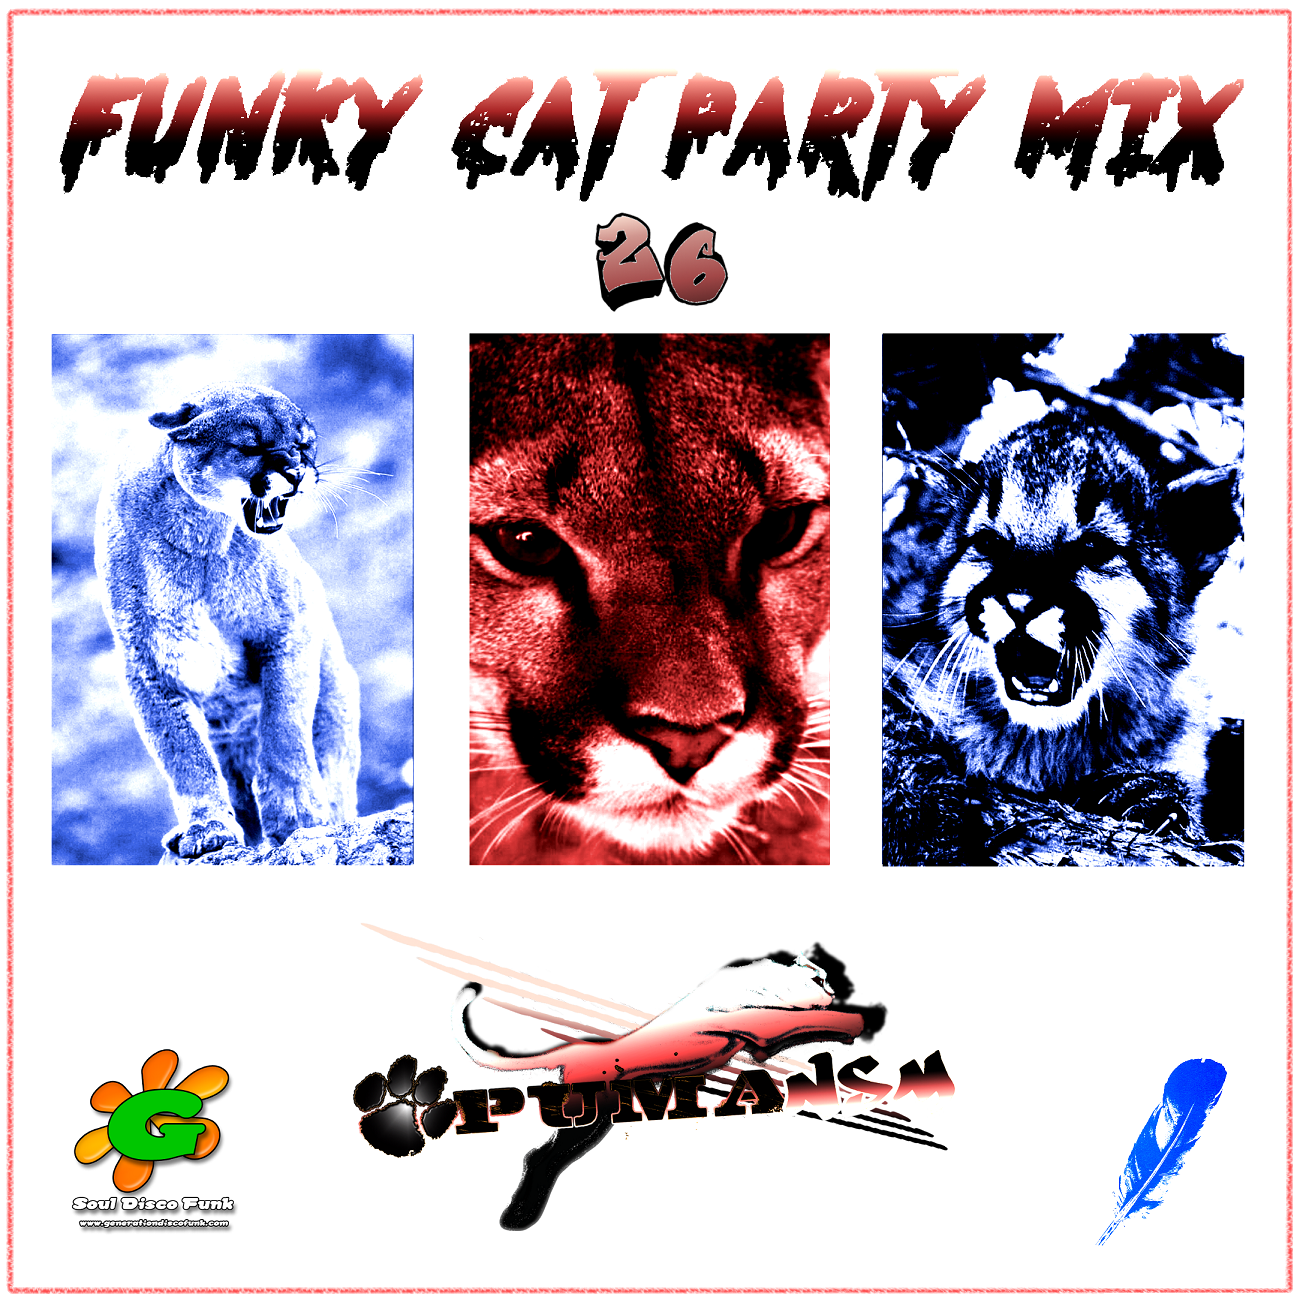 Funky Cat Party Mix #26 ( PumaNSM )